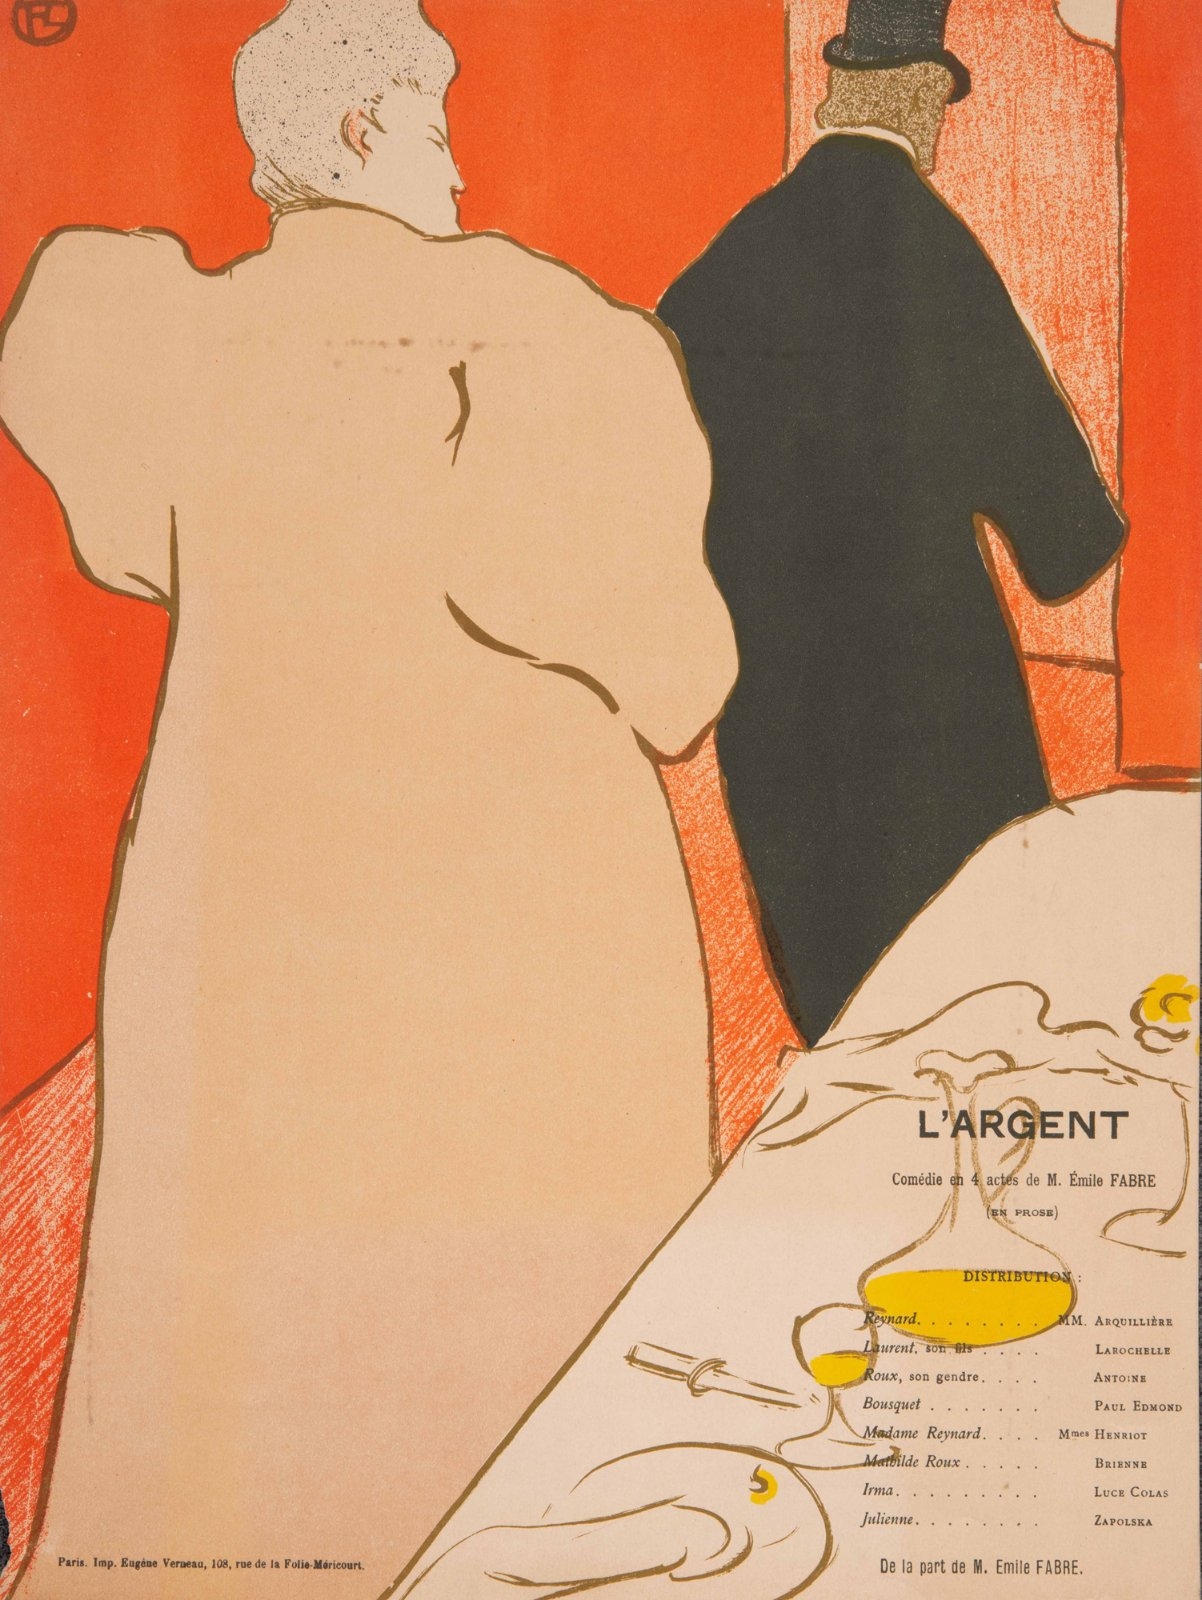 L’Argent by Henri de Toulouse-Lautrec, 1895